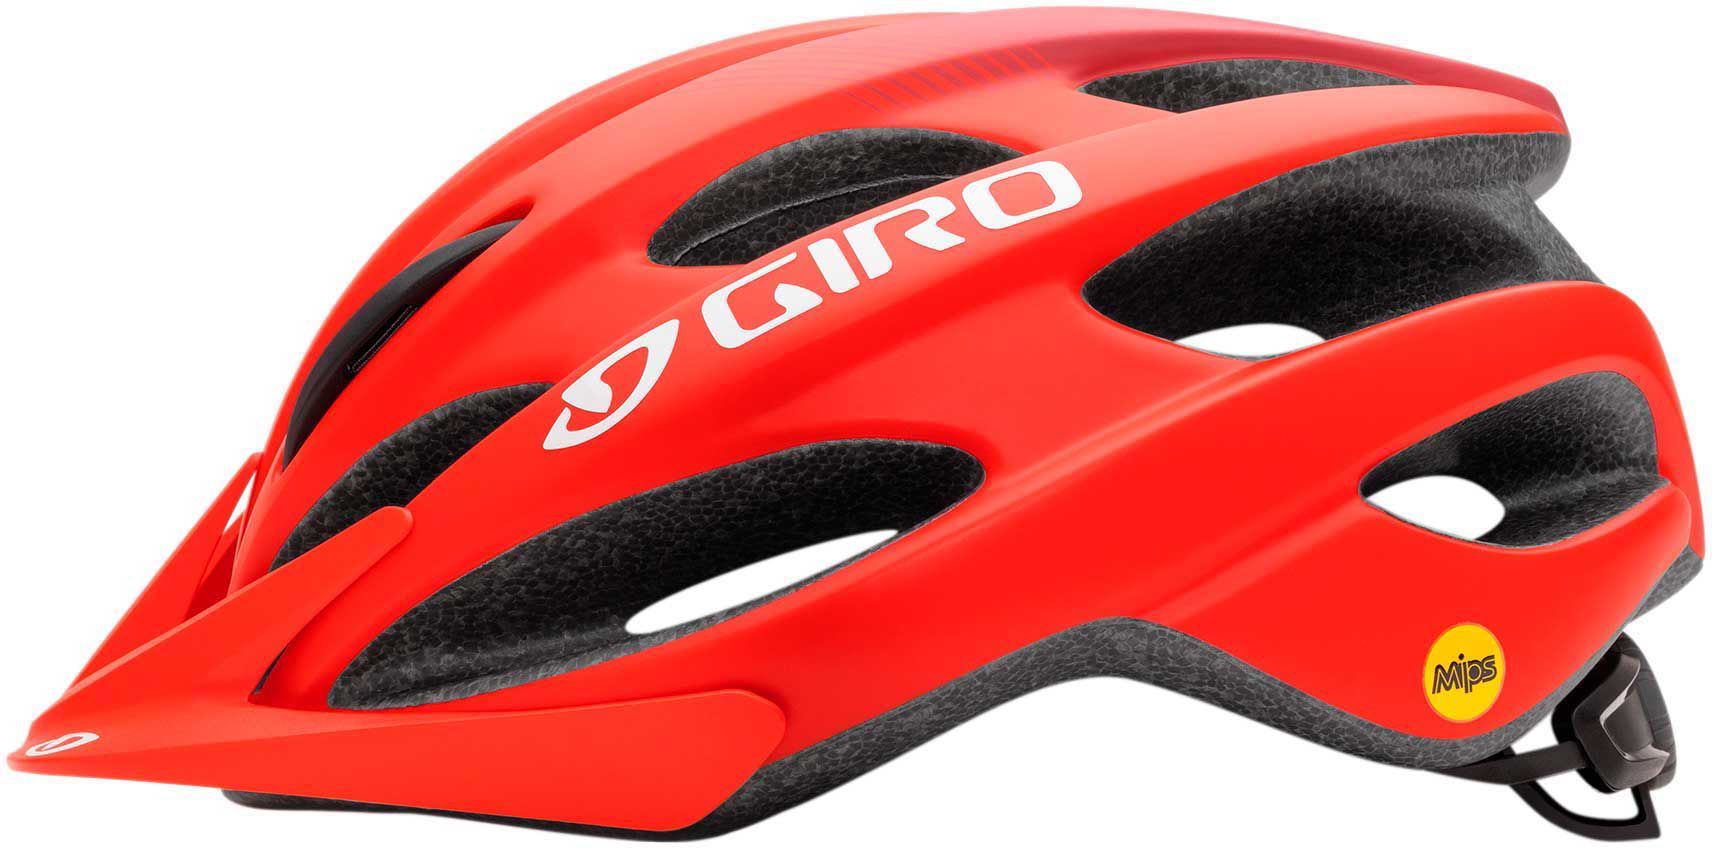 Giro Adult Lever MIPS Bike Helmet